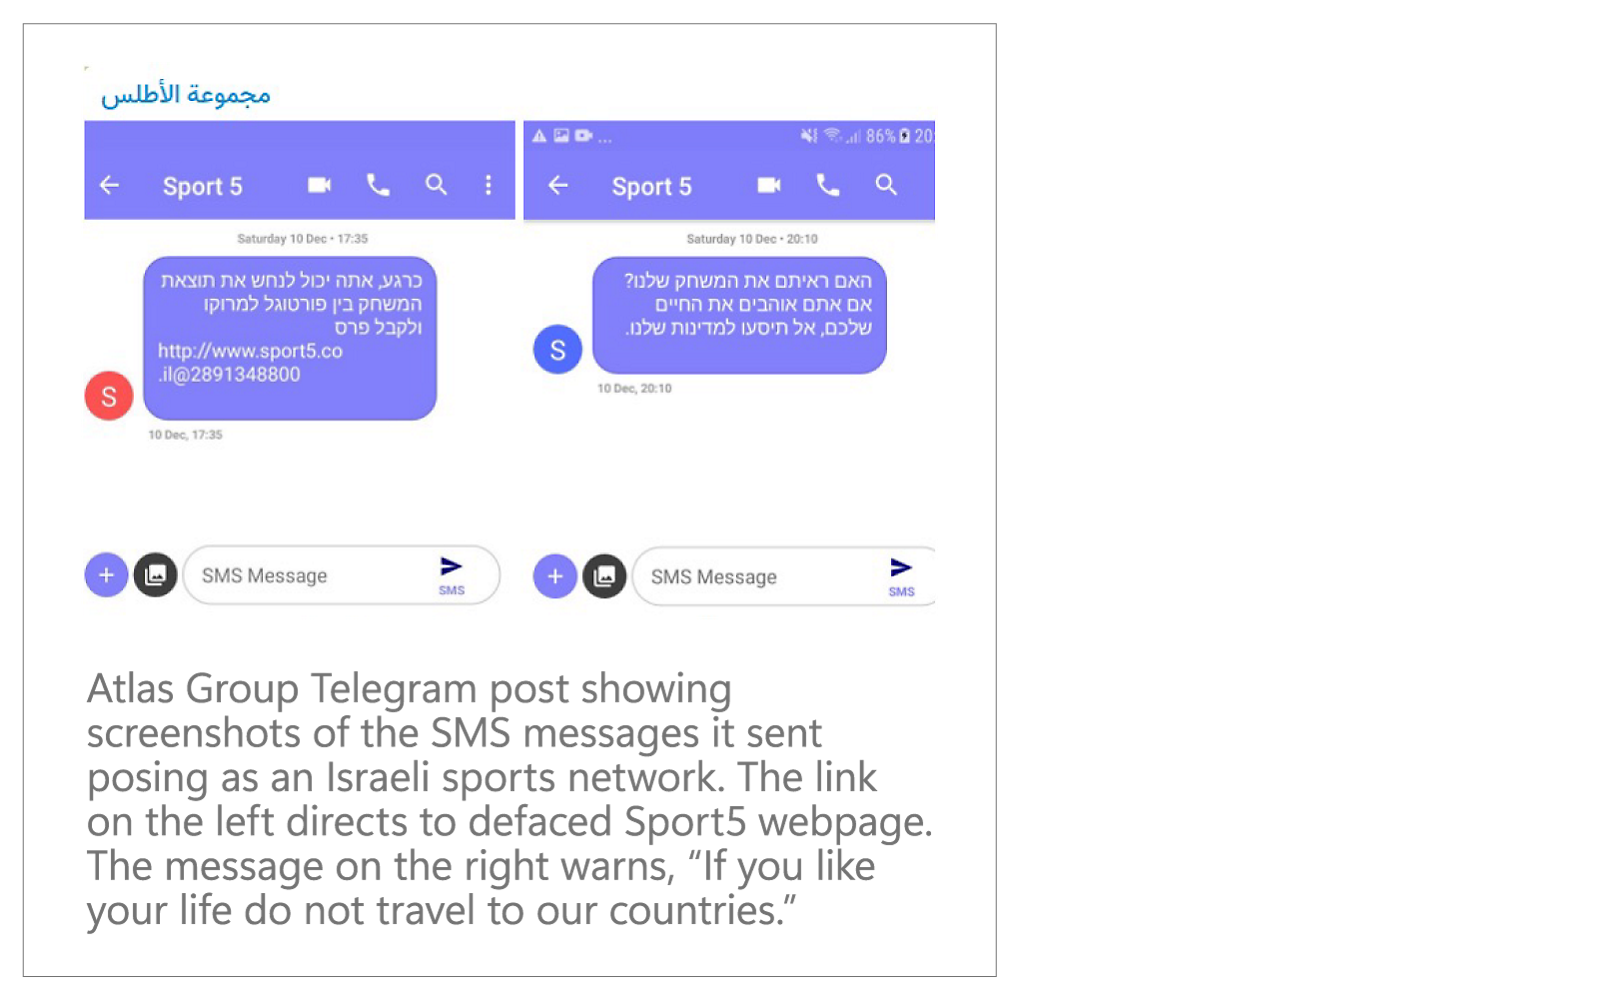 Atlas Group Telegram: Capturi de ecran ale unor mesaje SMS care pretind a fi de la un canal de sport israelian.